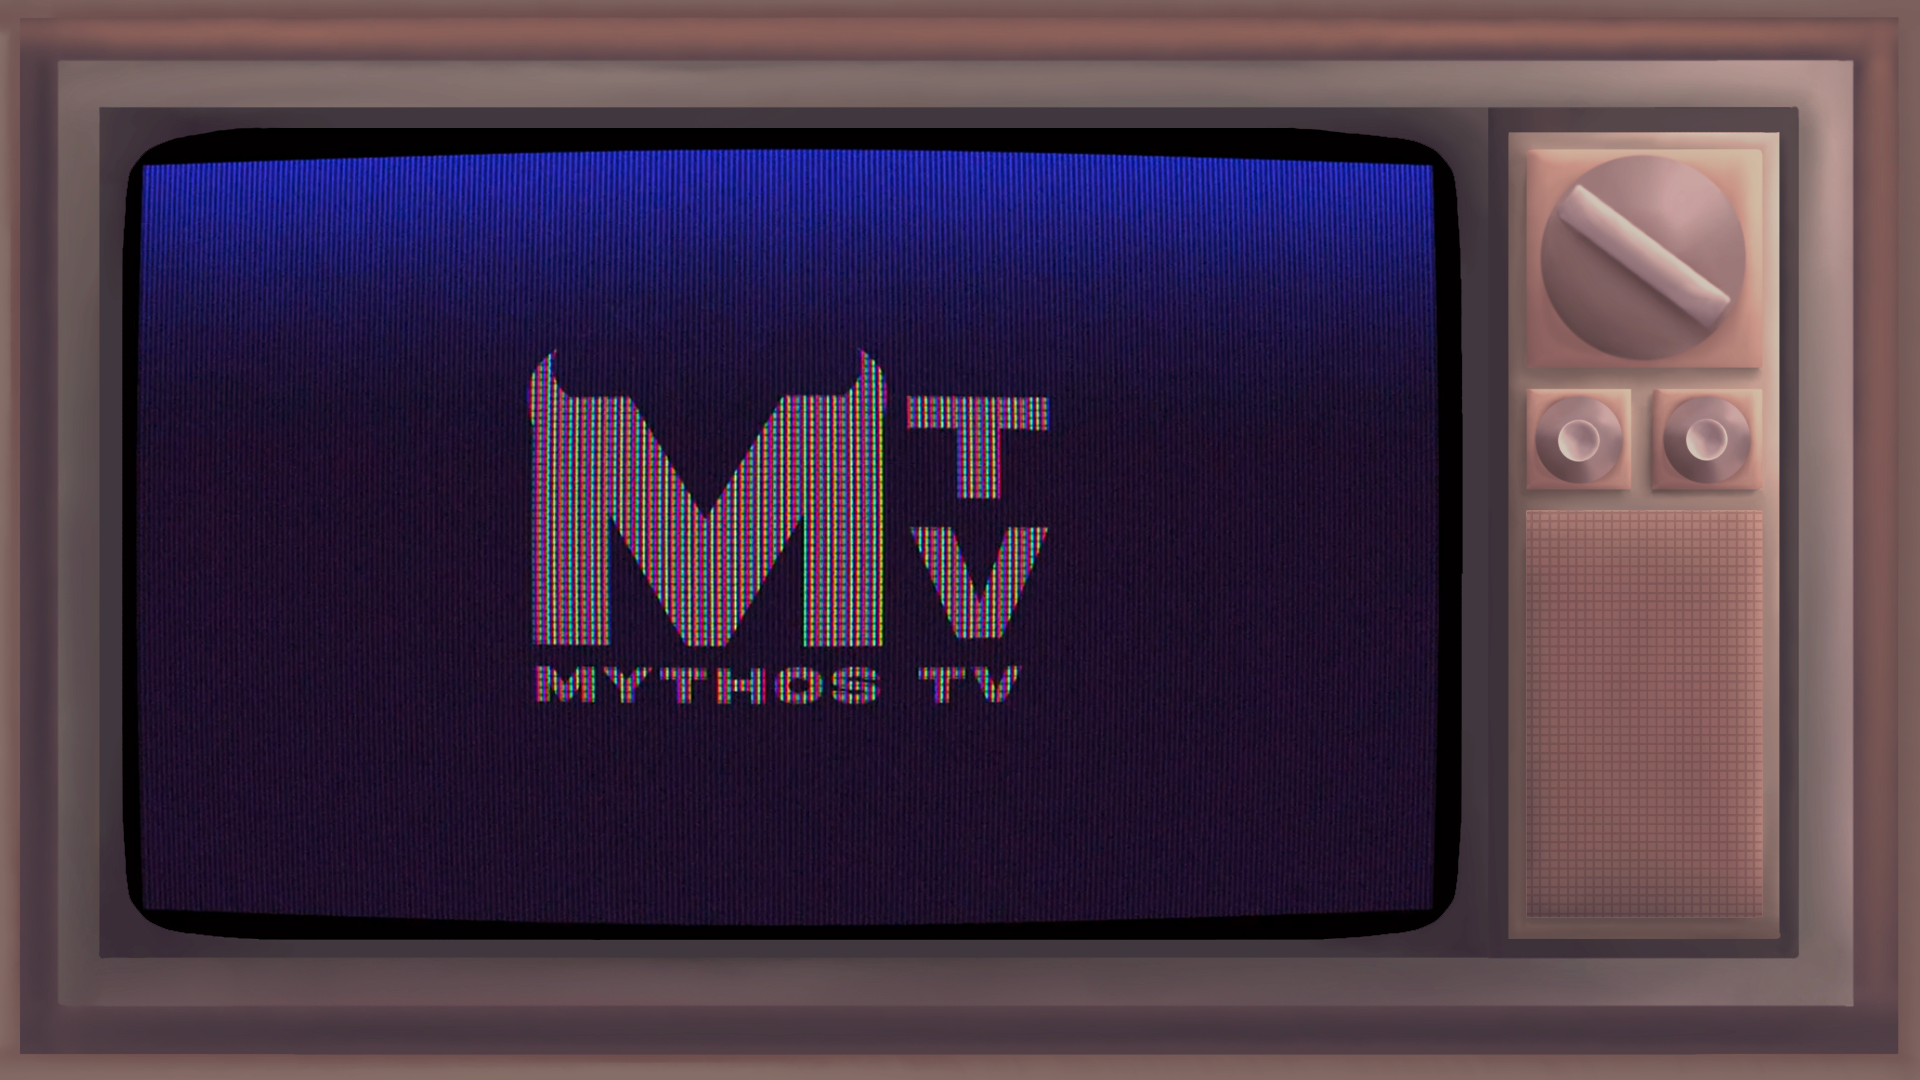 Mythos TV